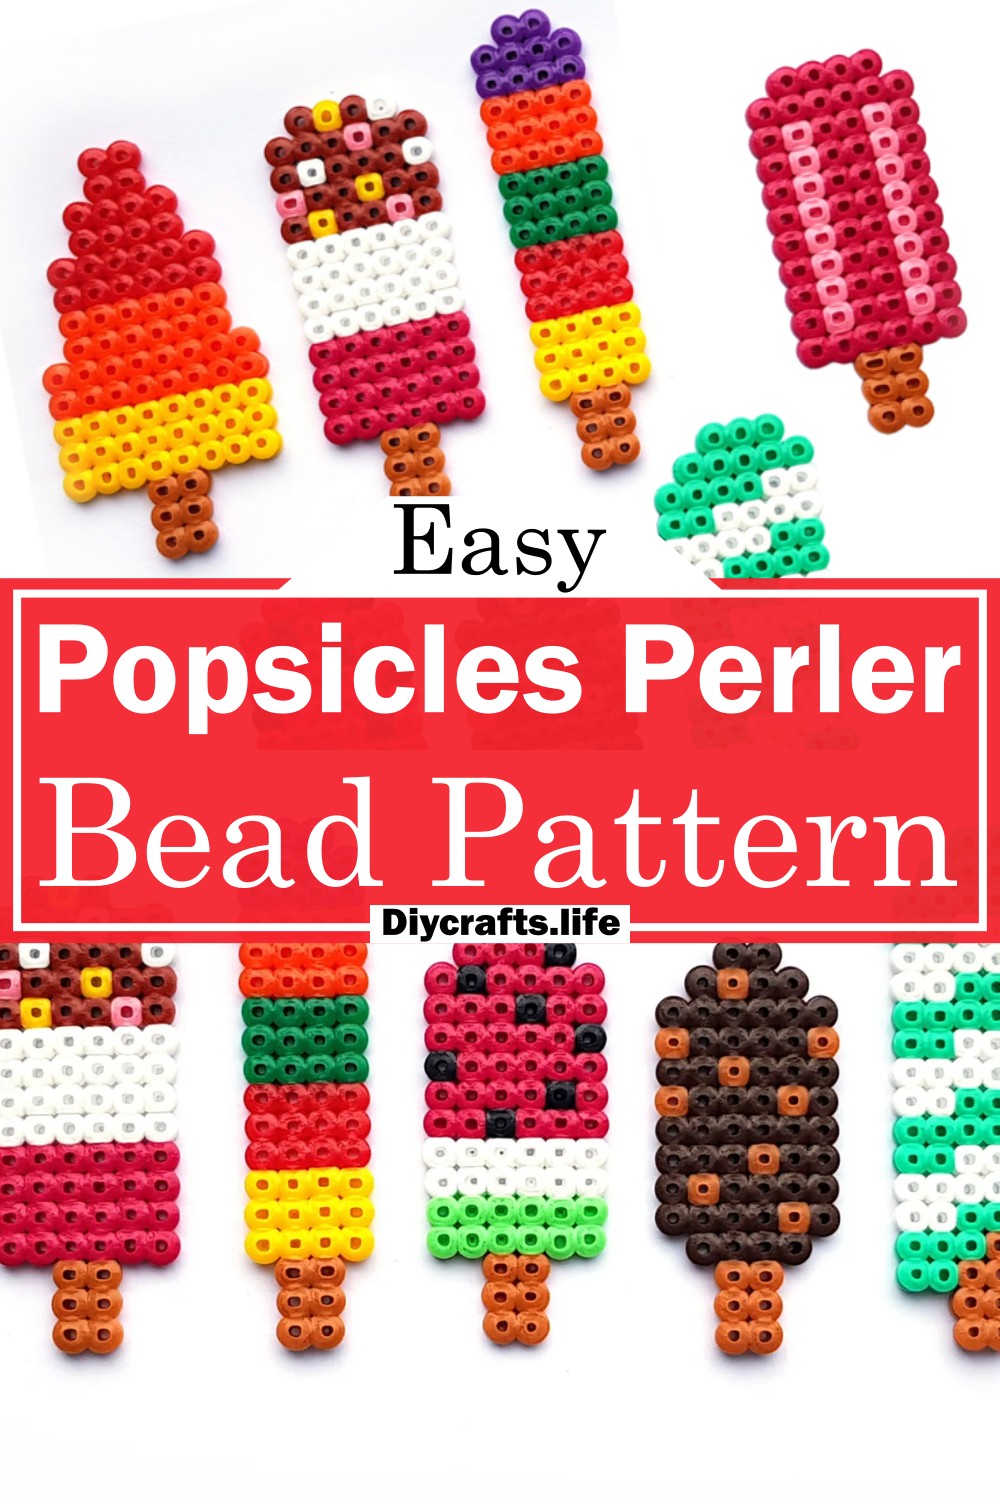 Popsicles Perler Bead Pattern